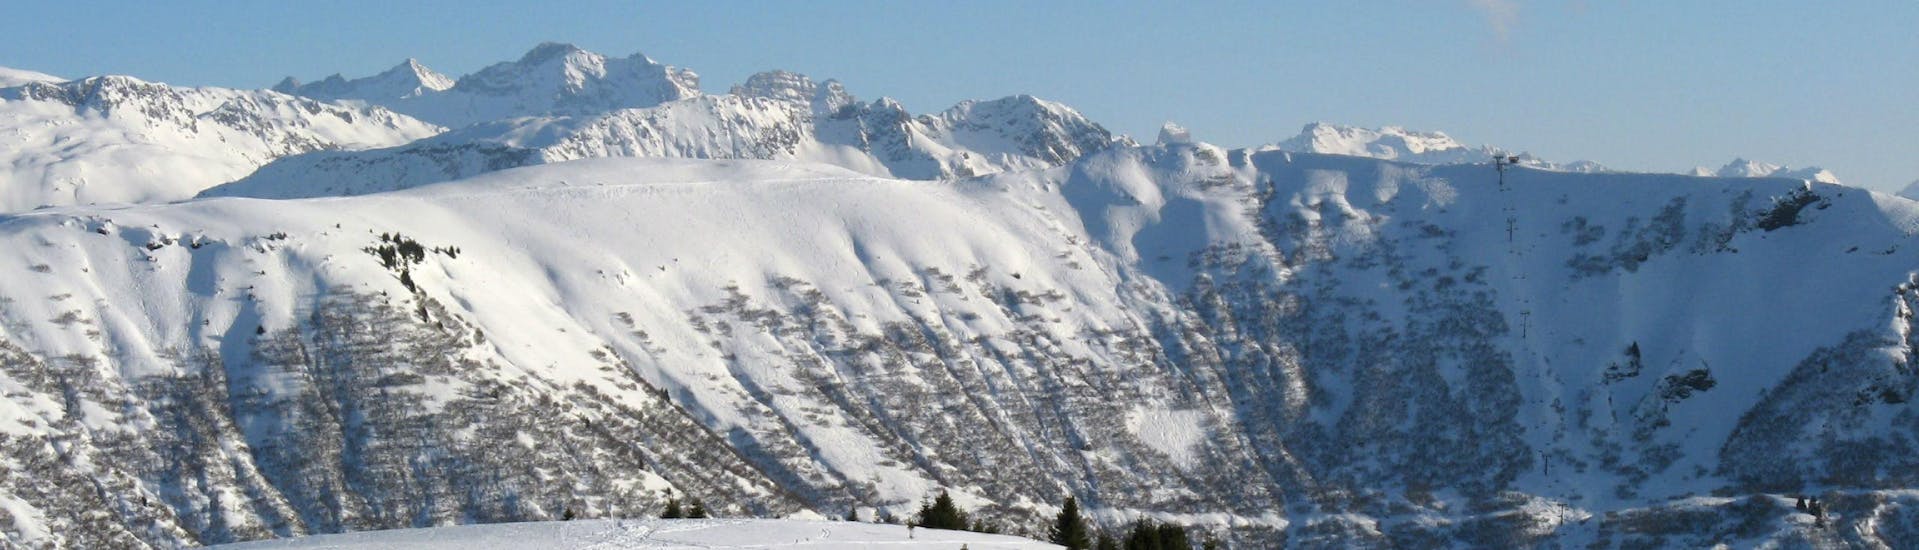 Une vue panoramique des pistes de ski de Notre Dame de Bellecombe, une station de ski française nichée entre les majestueux sommets du département de la Savoie, où les écoles de ski locales offrent un large choix de cours de ski.